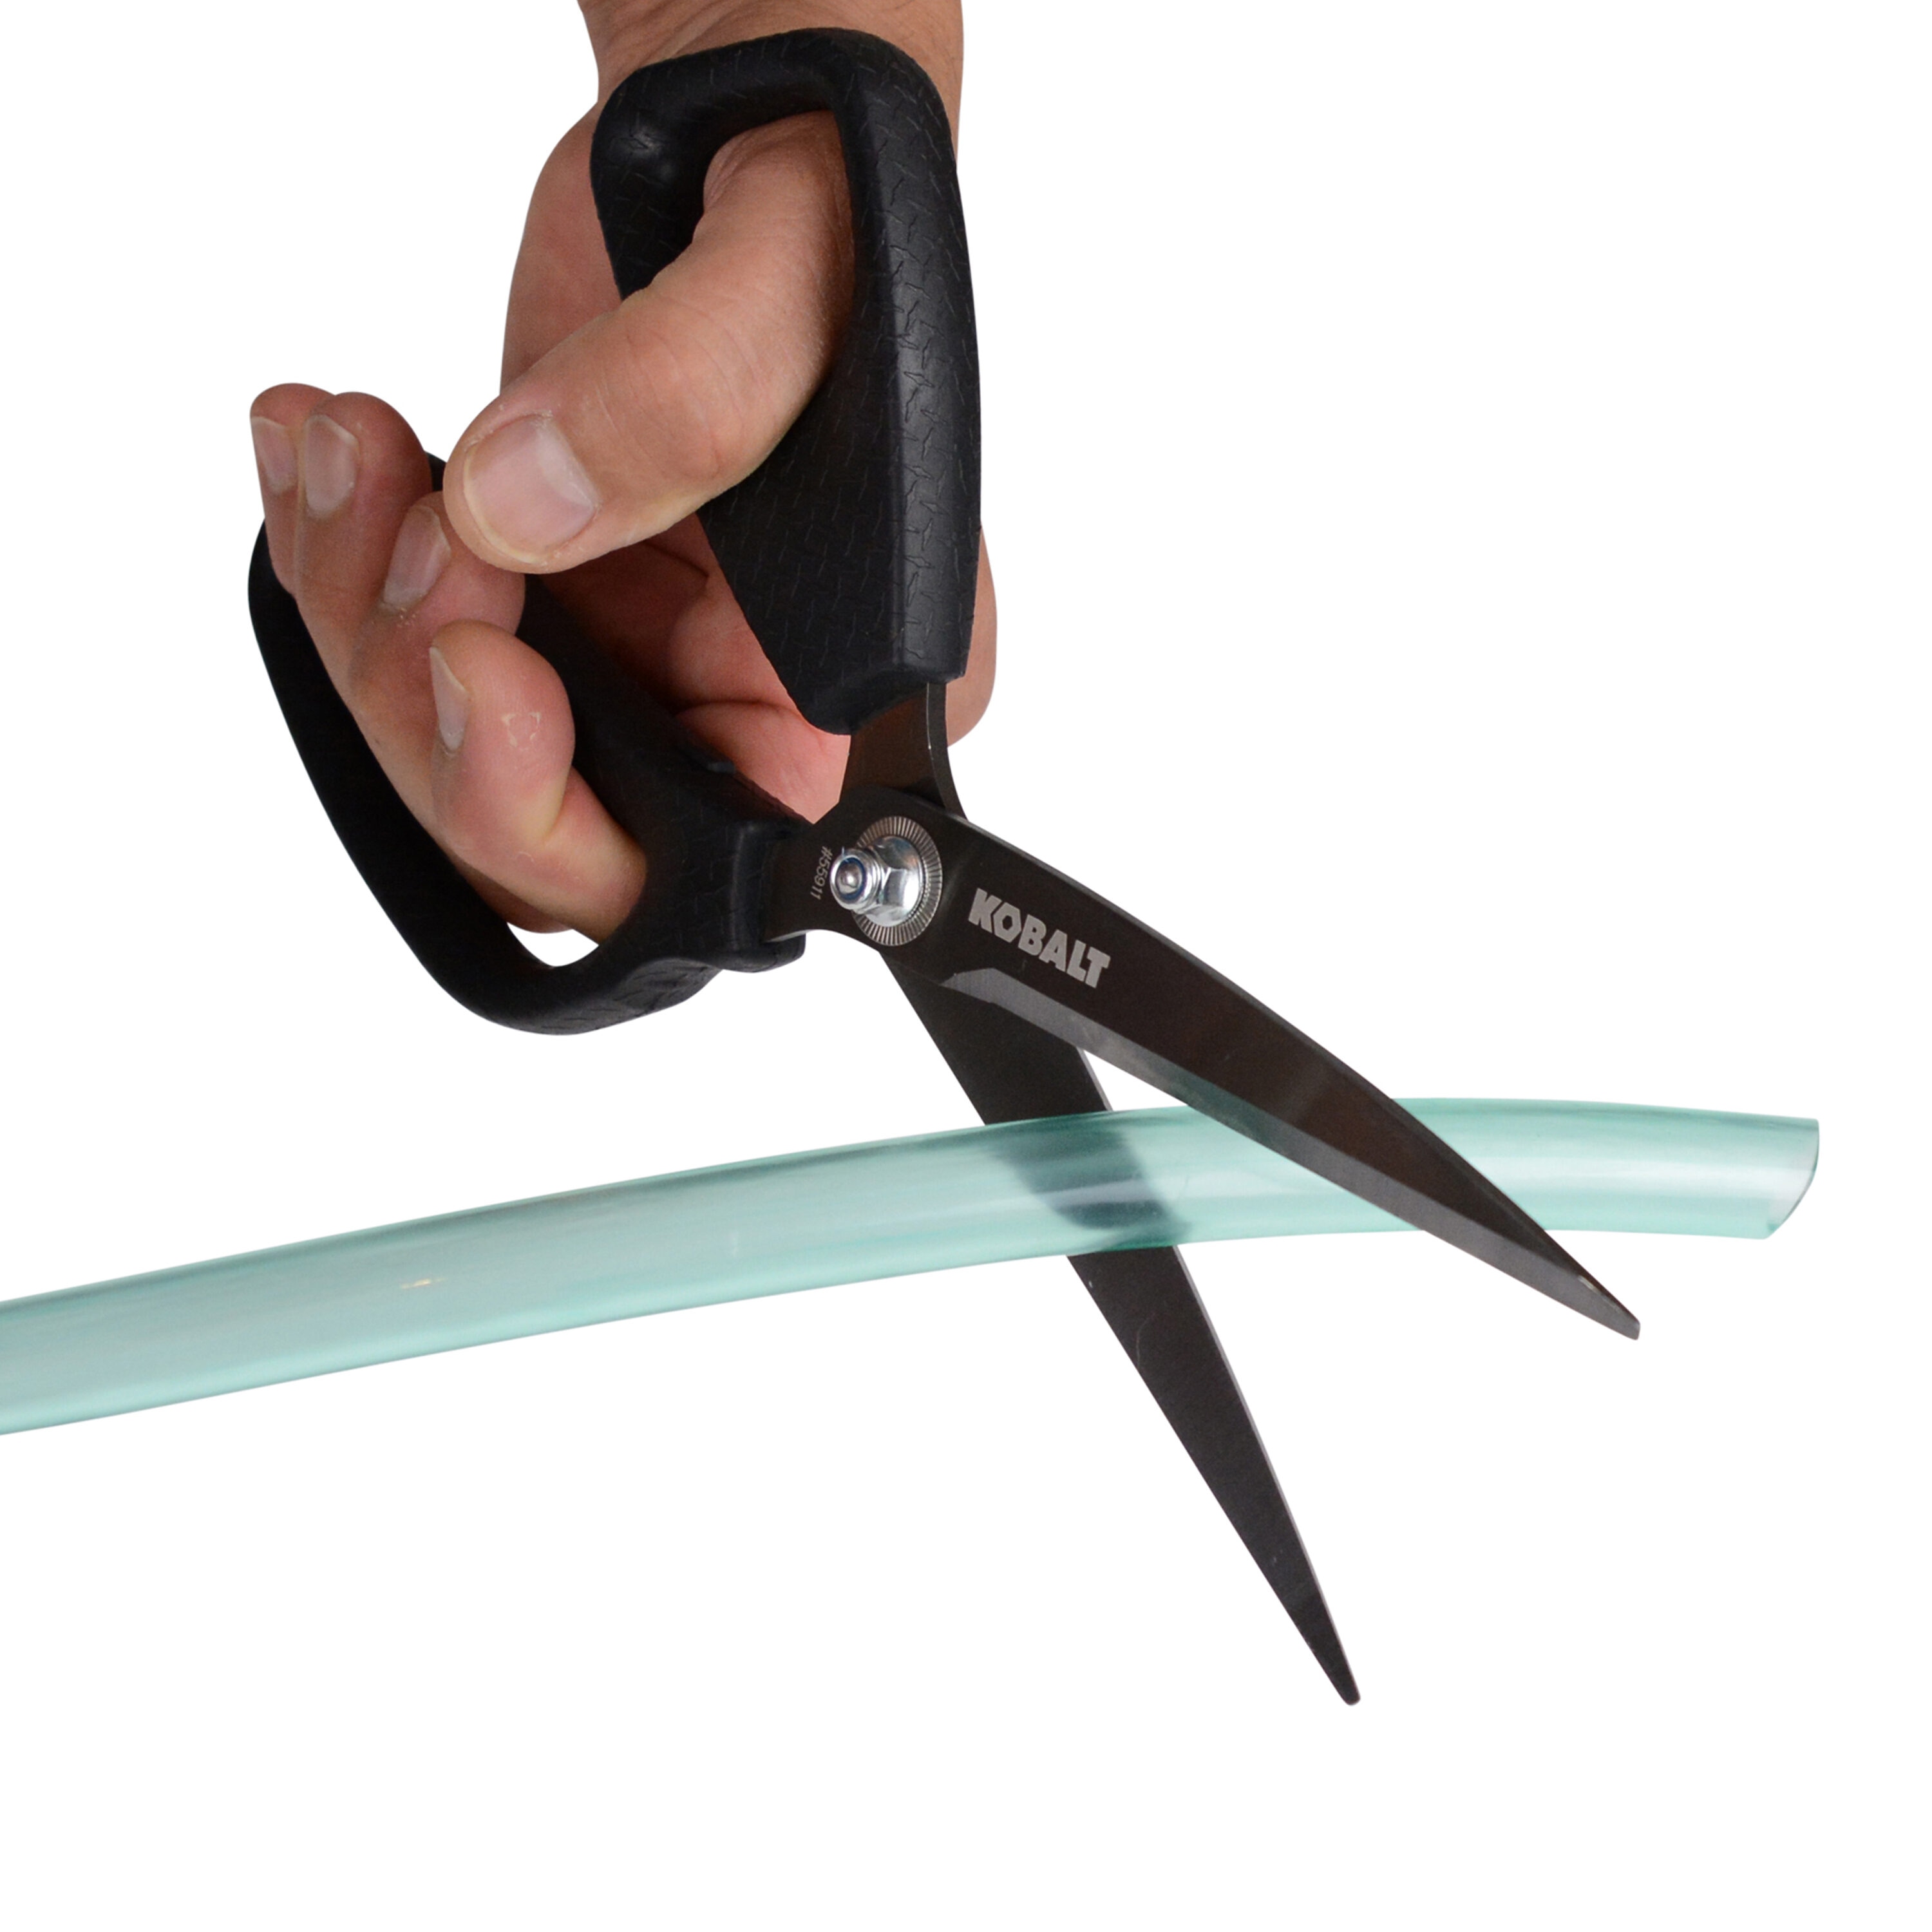 Kobalt 3-in Serrated Molded Grip Heavy Duty Scissors